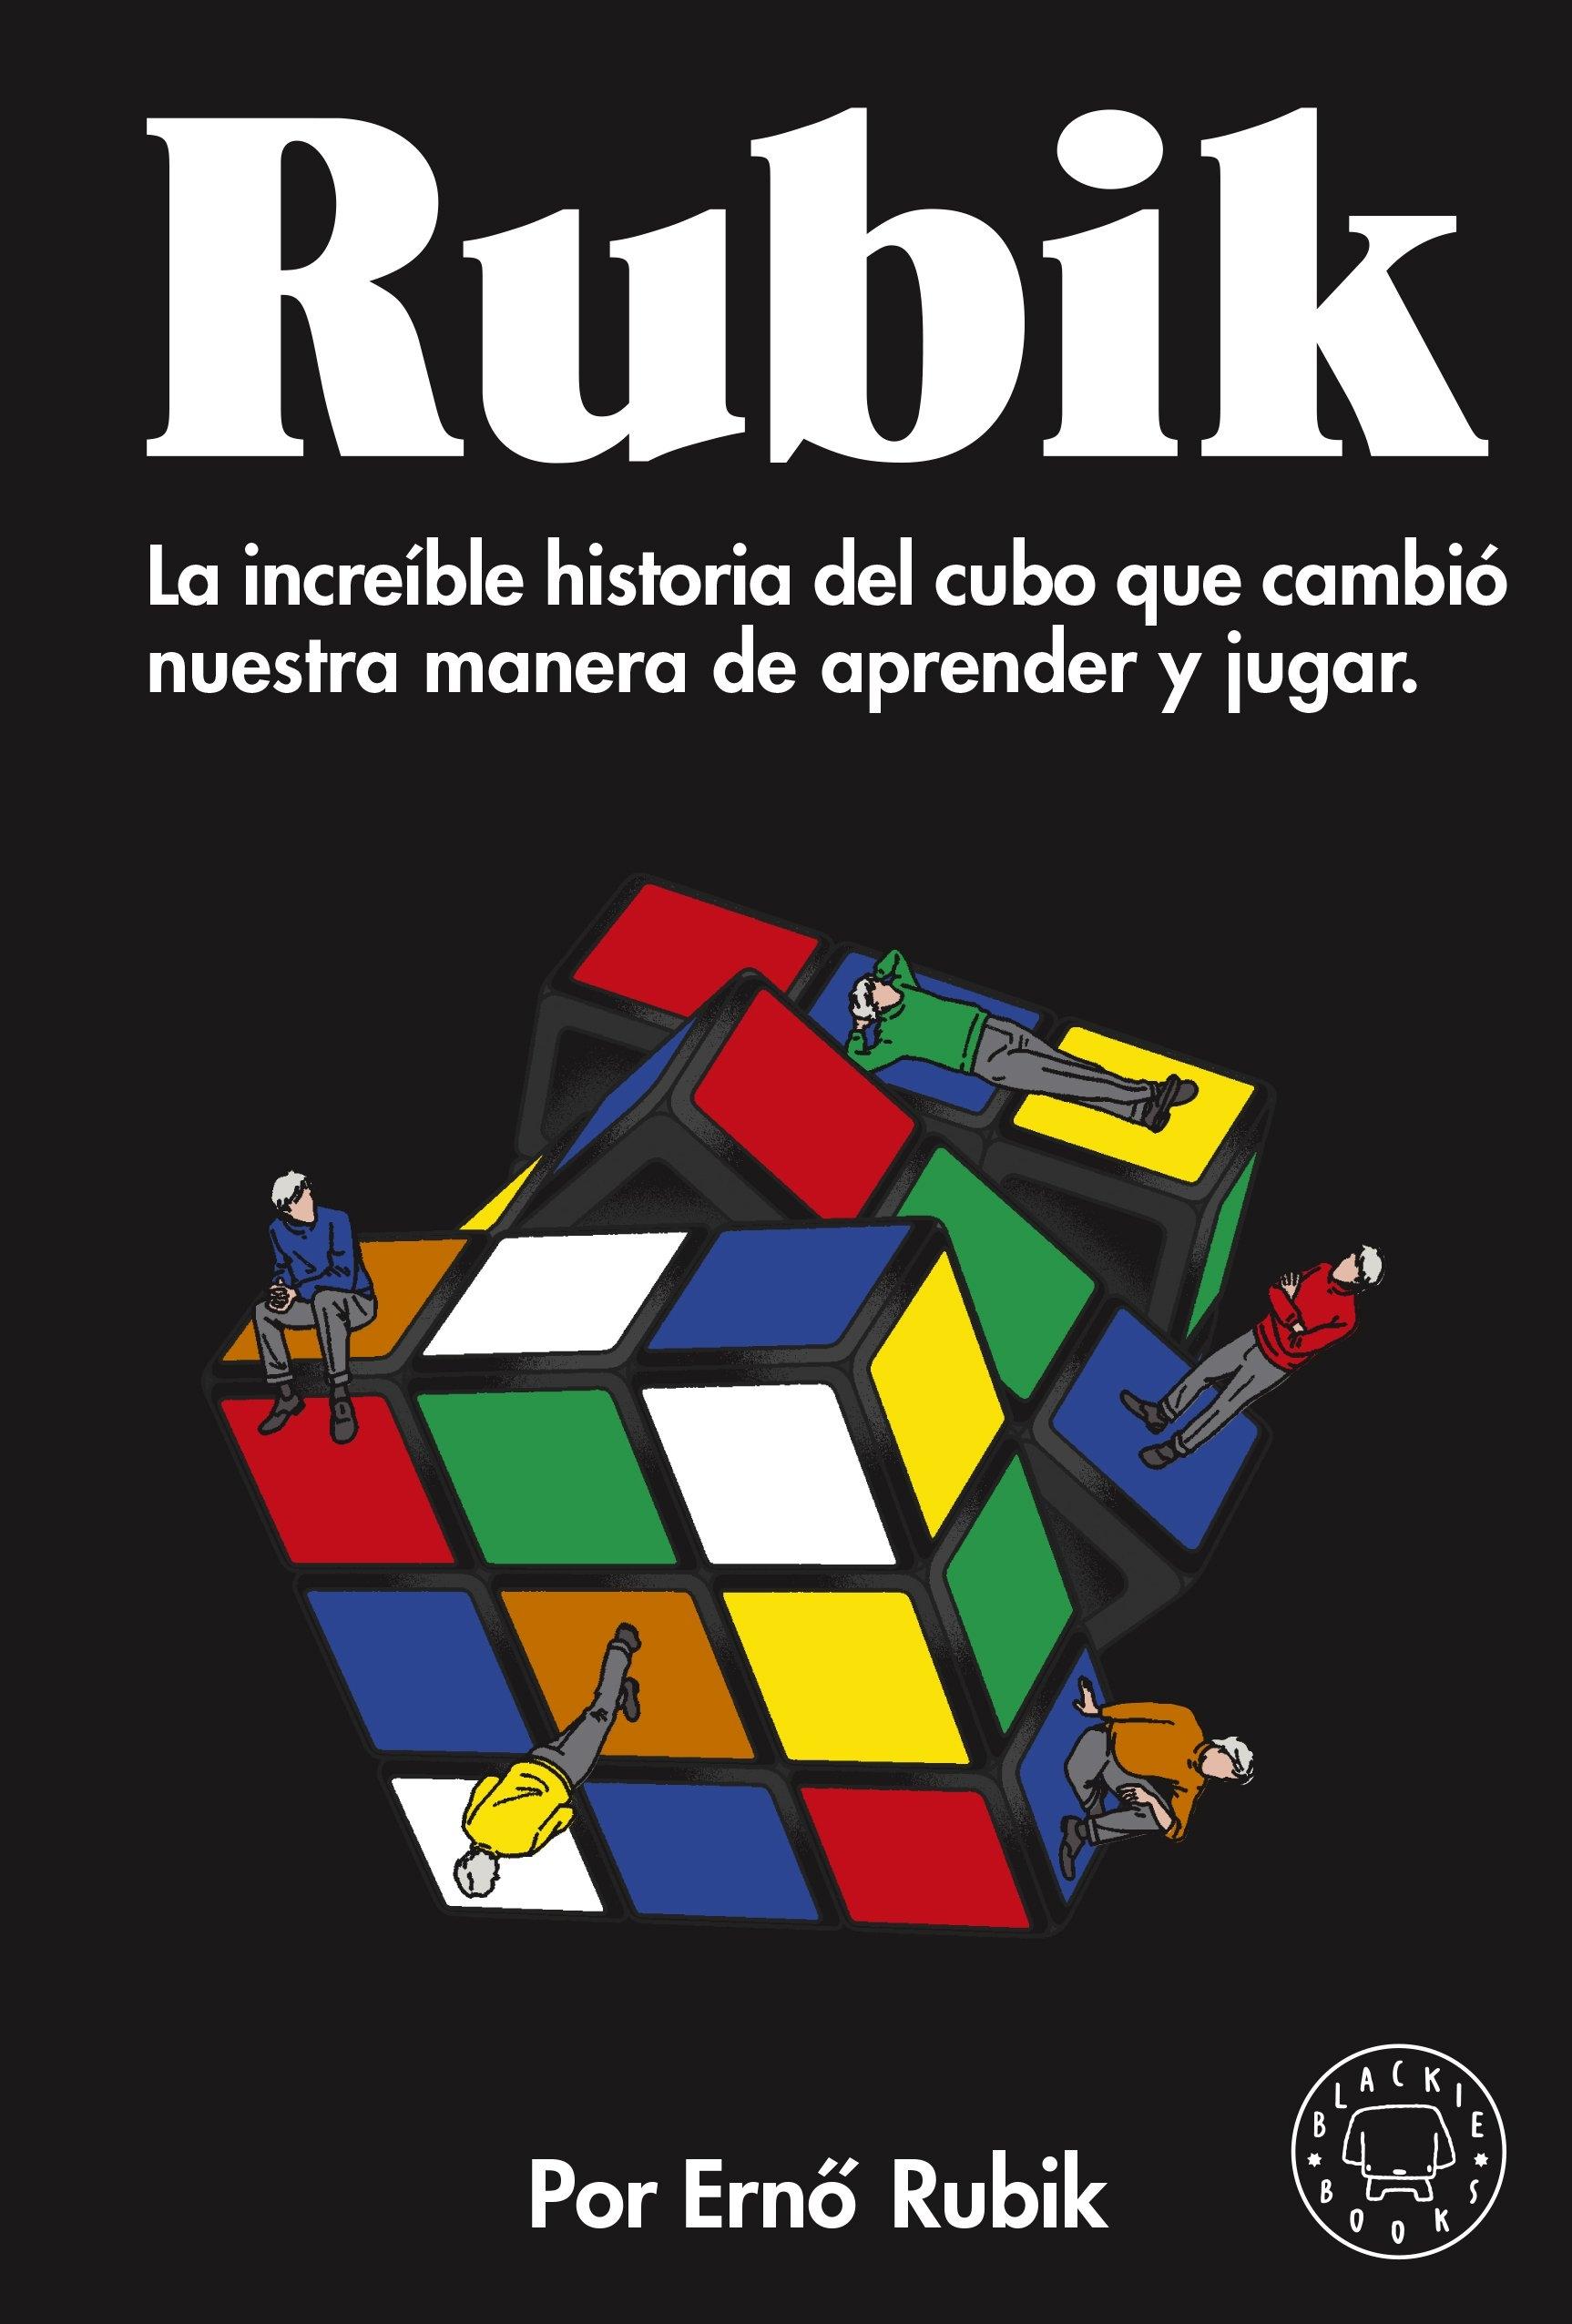 Rubik "La increíble historia del cubo que cambió nuestra manera de aprender y j"